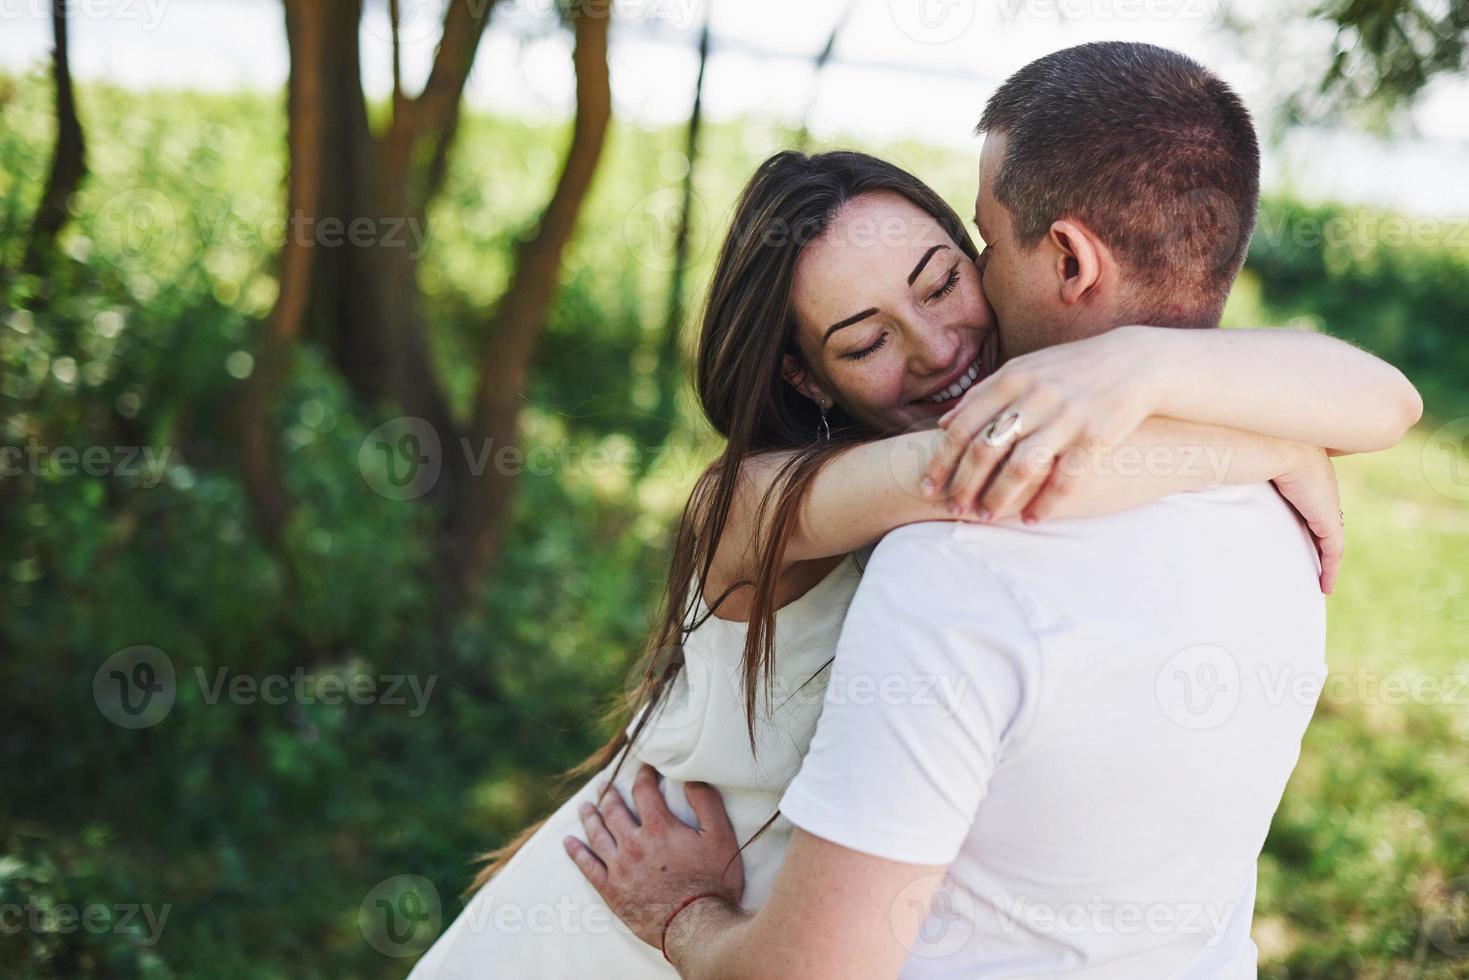 feliz y joven pareja embarazada abrazándose en la naturaleza. momentos romanticos foto